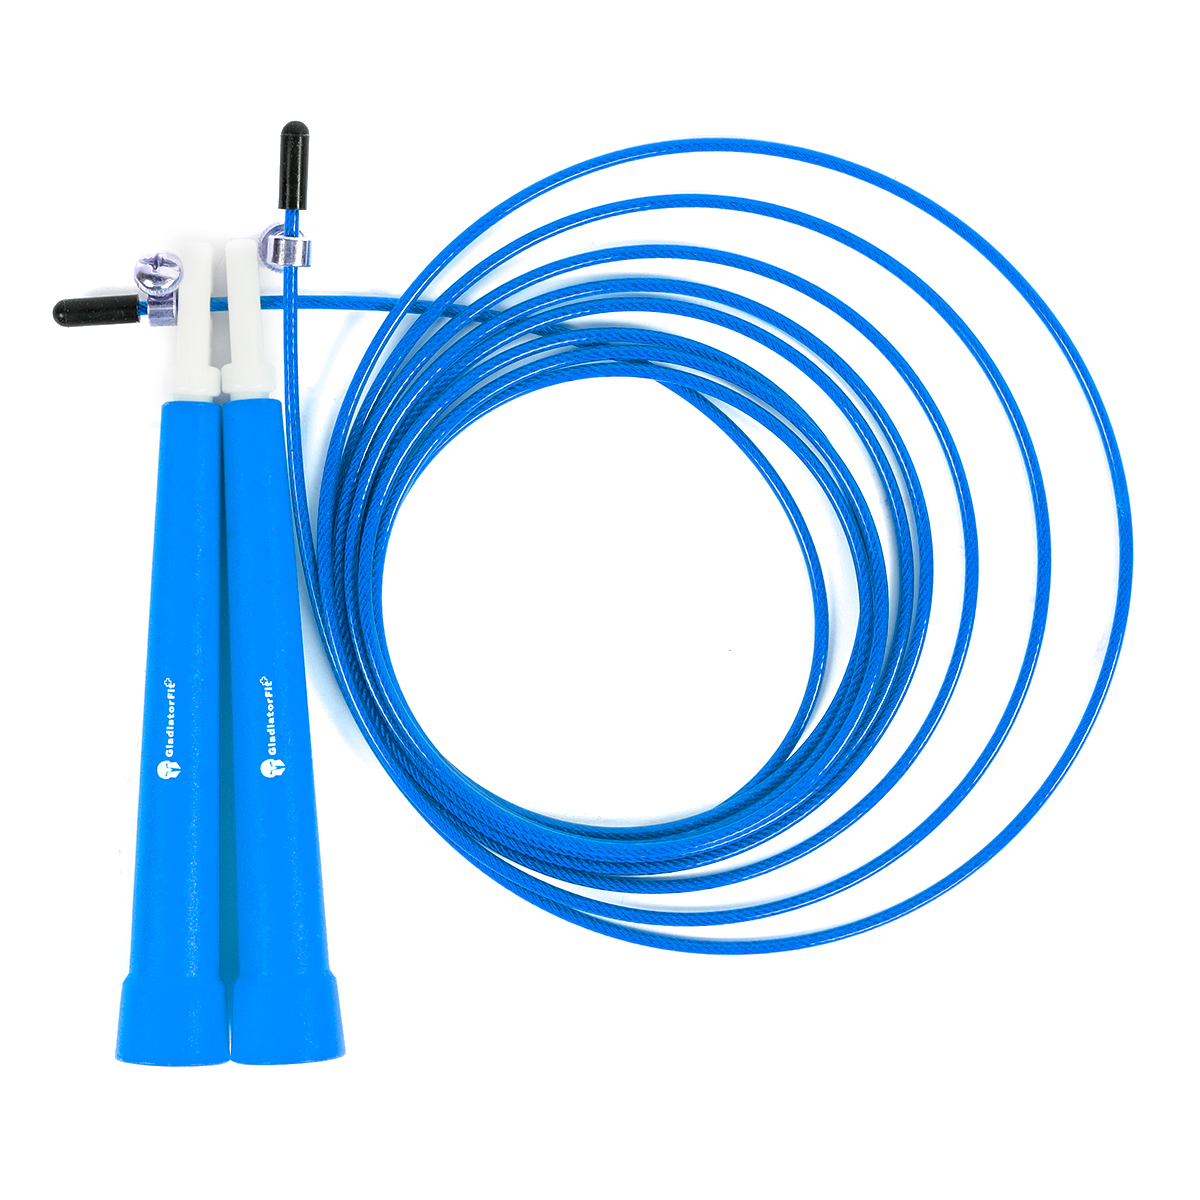 Cuerda De Saltar De Plástico 180cm Ajustable Con  Bolsa Gladiatorfit - azul - 